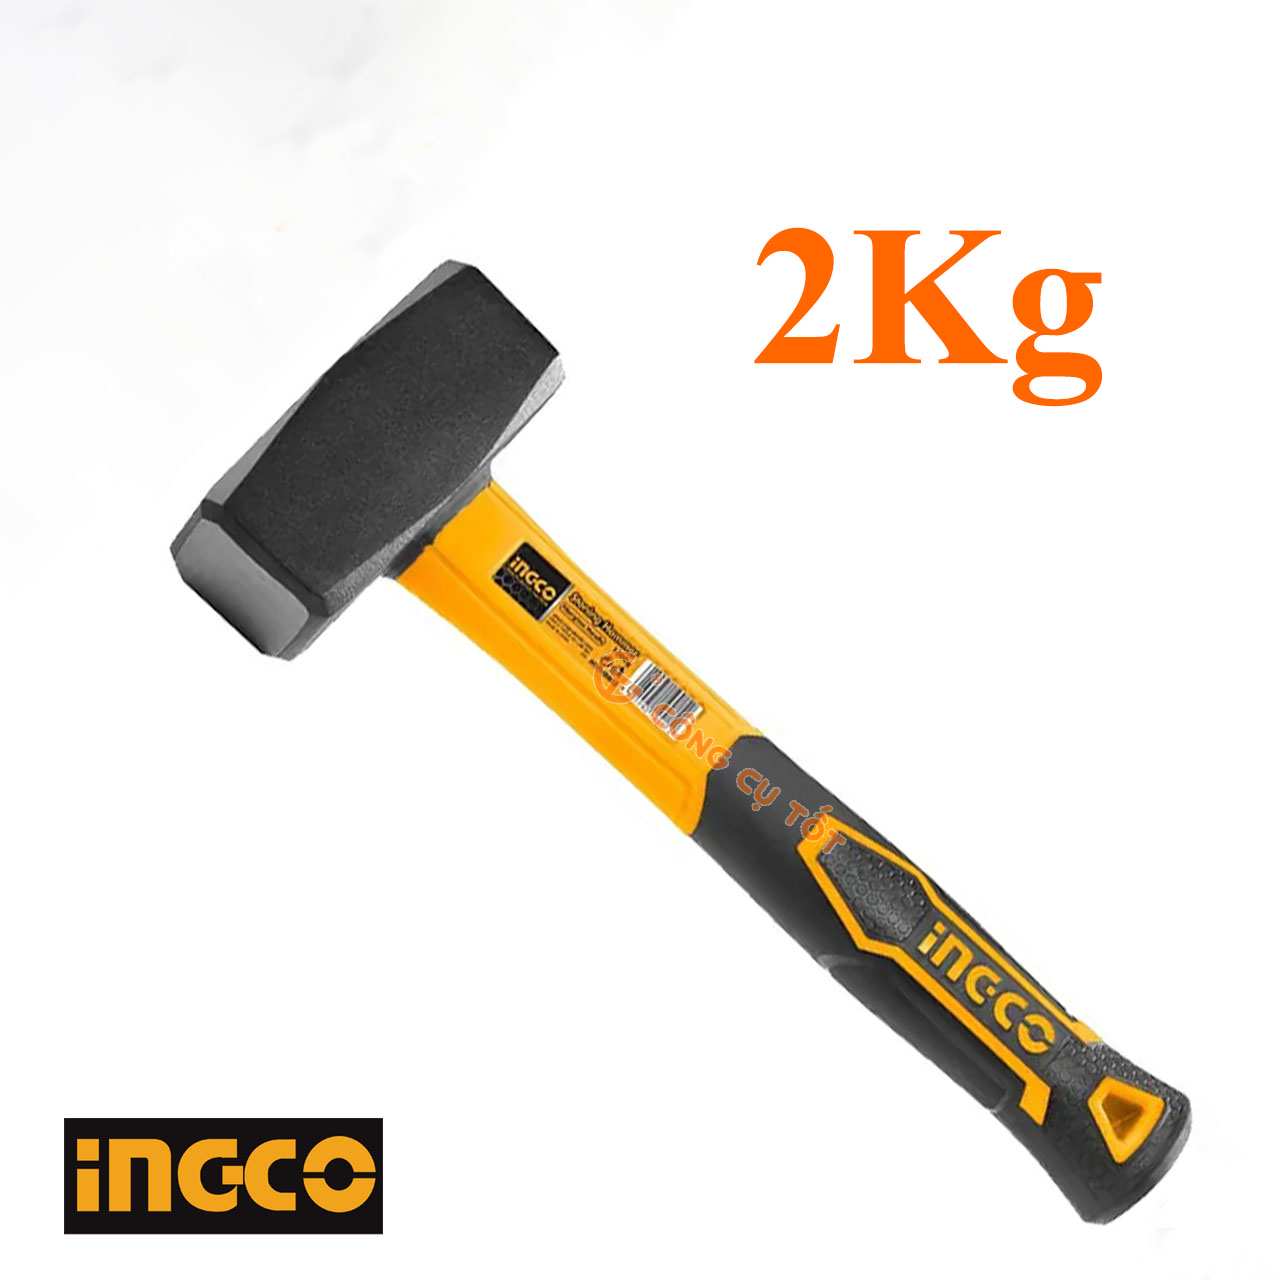 Búa tạ 2Kg nhà Ingco có thể sử dụng phổ biến ở nhiều ngành nghề như xây dựng, cơ khí chế tạo- sửa chữa-lắp ráp,...